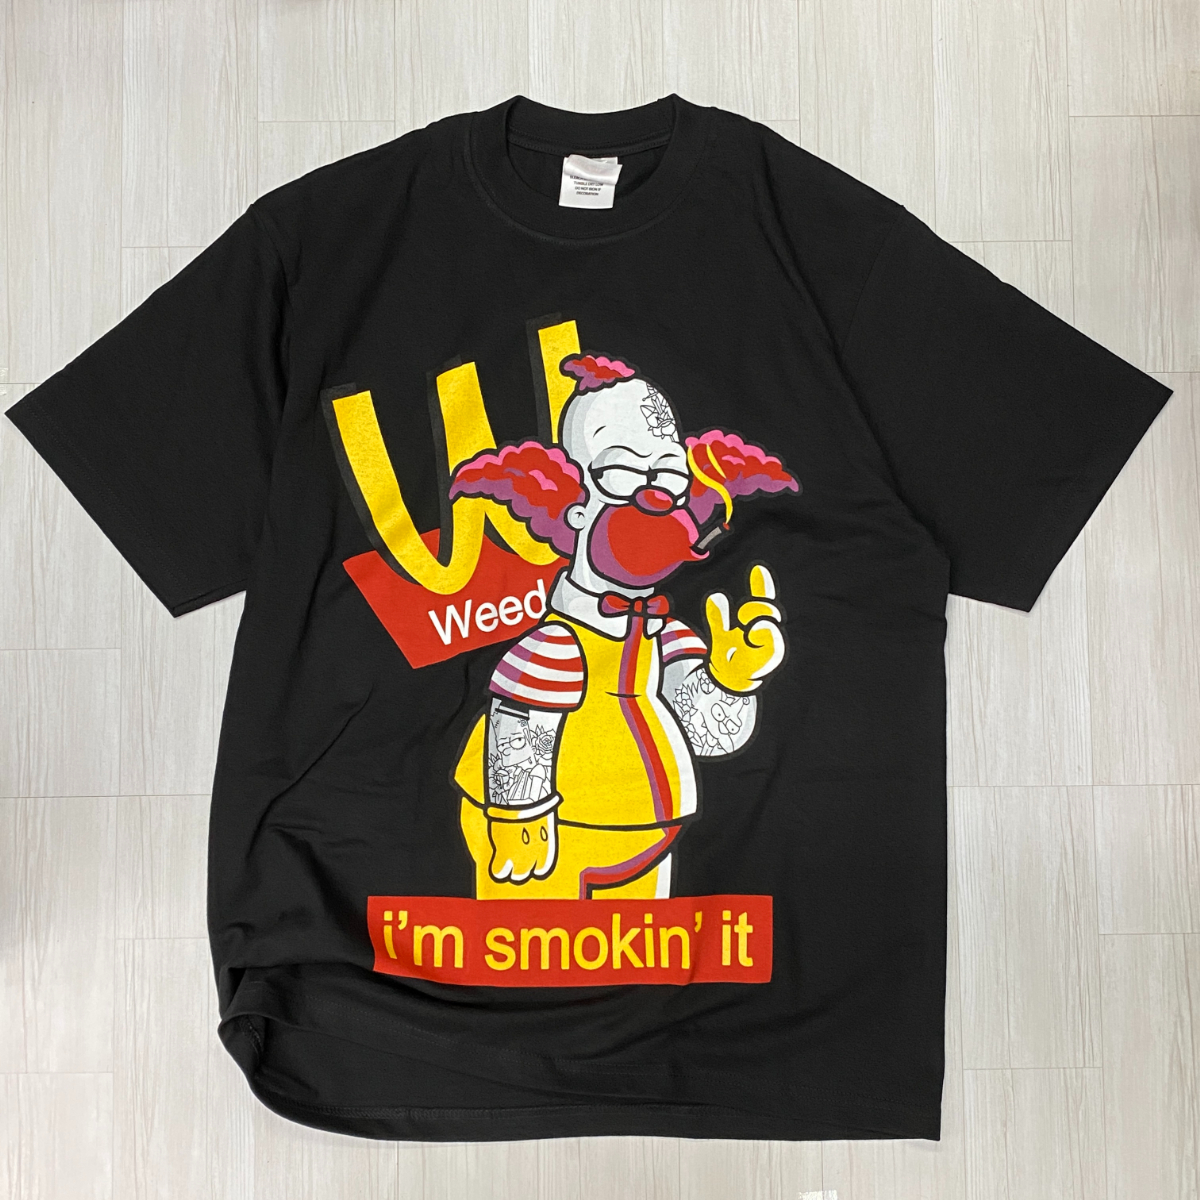 LA発 【XL】 I'm smokin' it 西海岸 アンダーグラウンド グラフィック ヘビーウェイト 半袖 Tシャツ 黒 オーバーサイズ 420 アメコミ